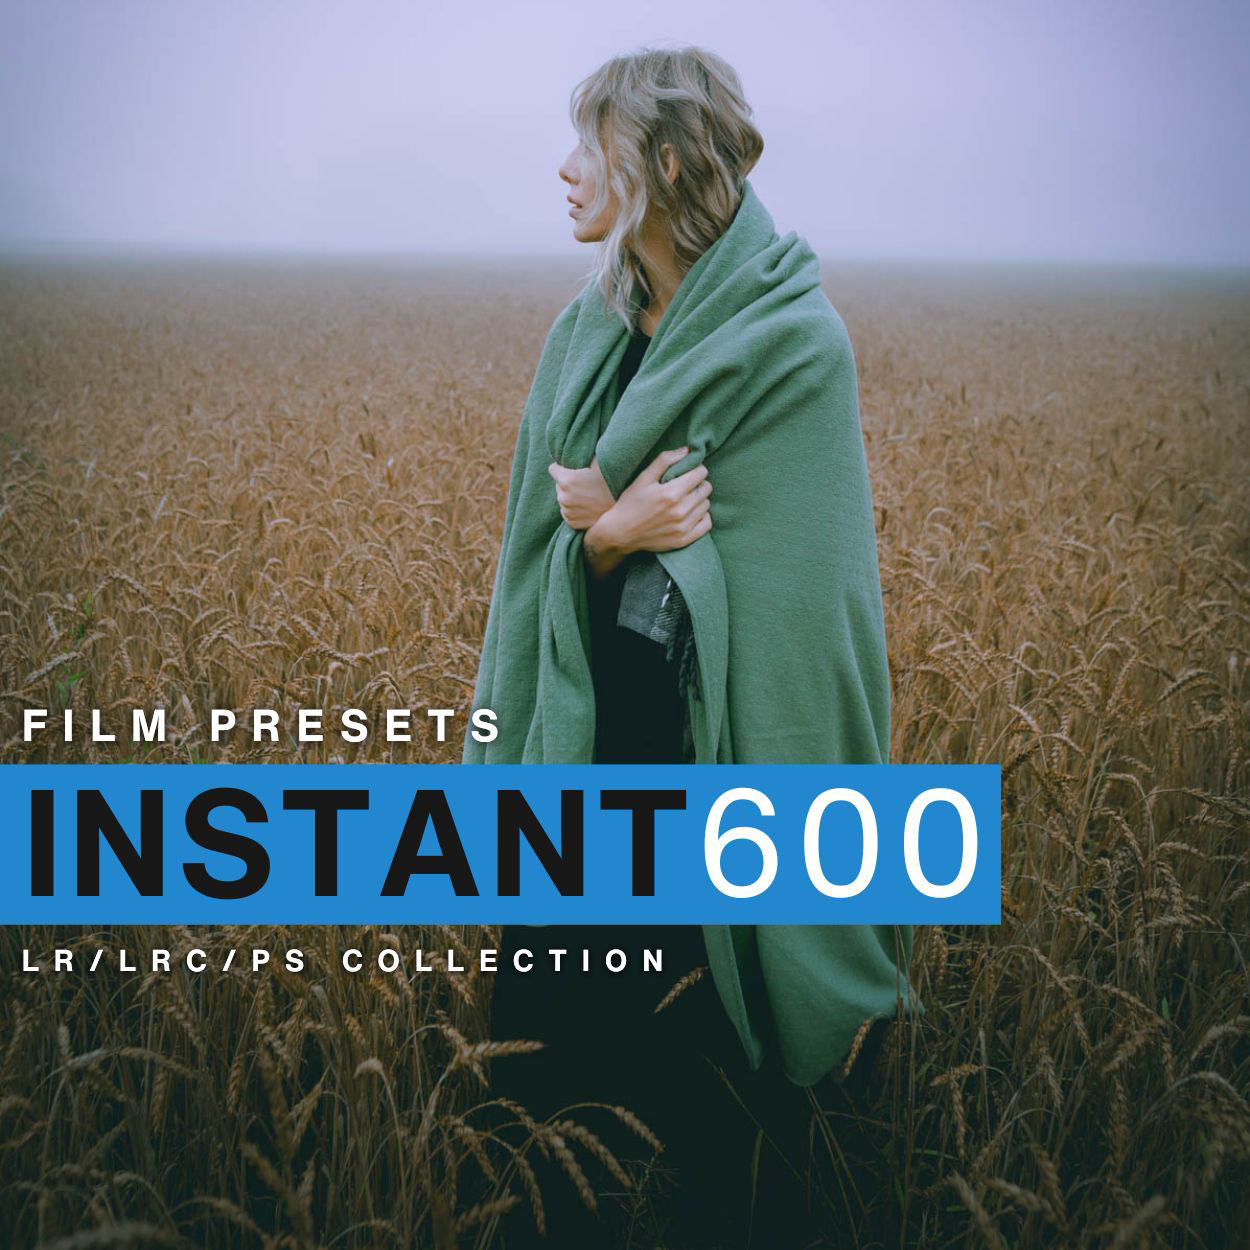 Polaroid 600 Instant Film Lightroom Presets Adobe Film Filter For Lightroom & Photoshop By Lou & Marks